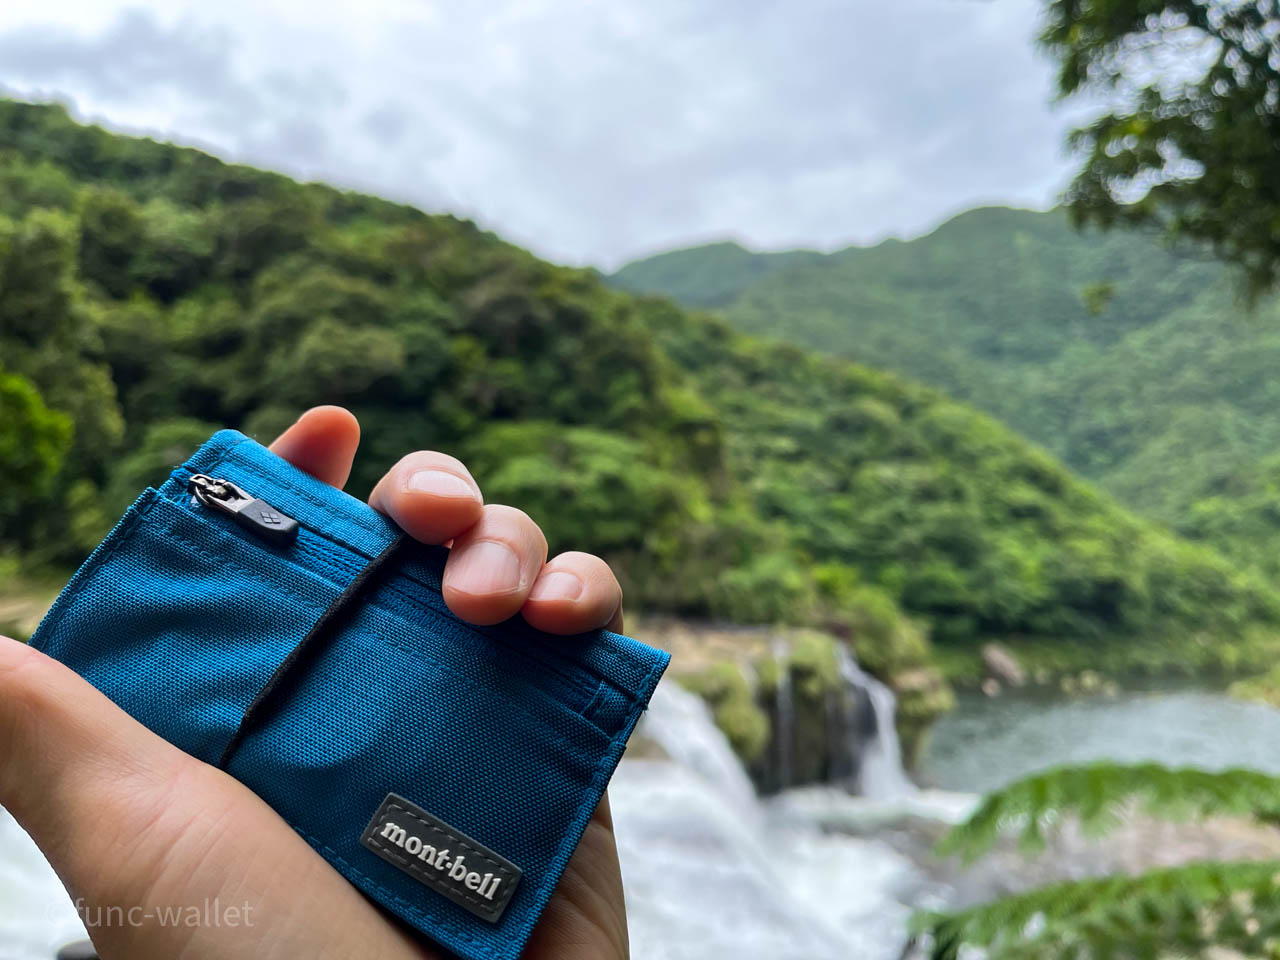 モンベル トレールワレットのレビュー。 雨や汗で濡れても大丈夫、小さくて軽い、旅行に最適な財布 | 機能的な財布あります